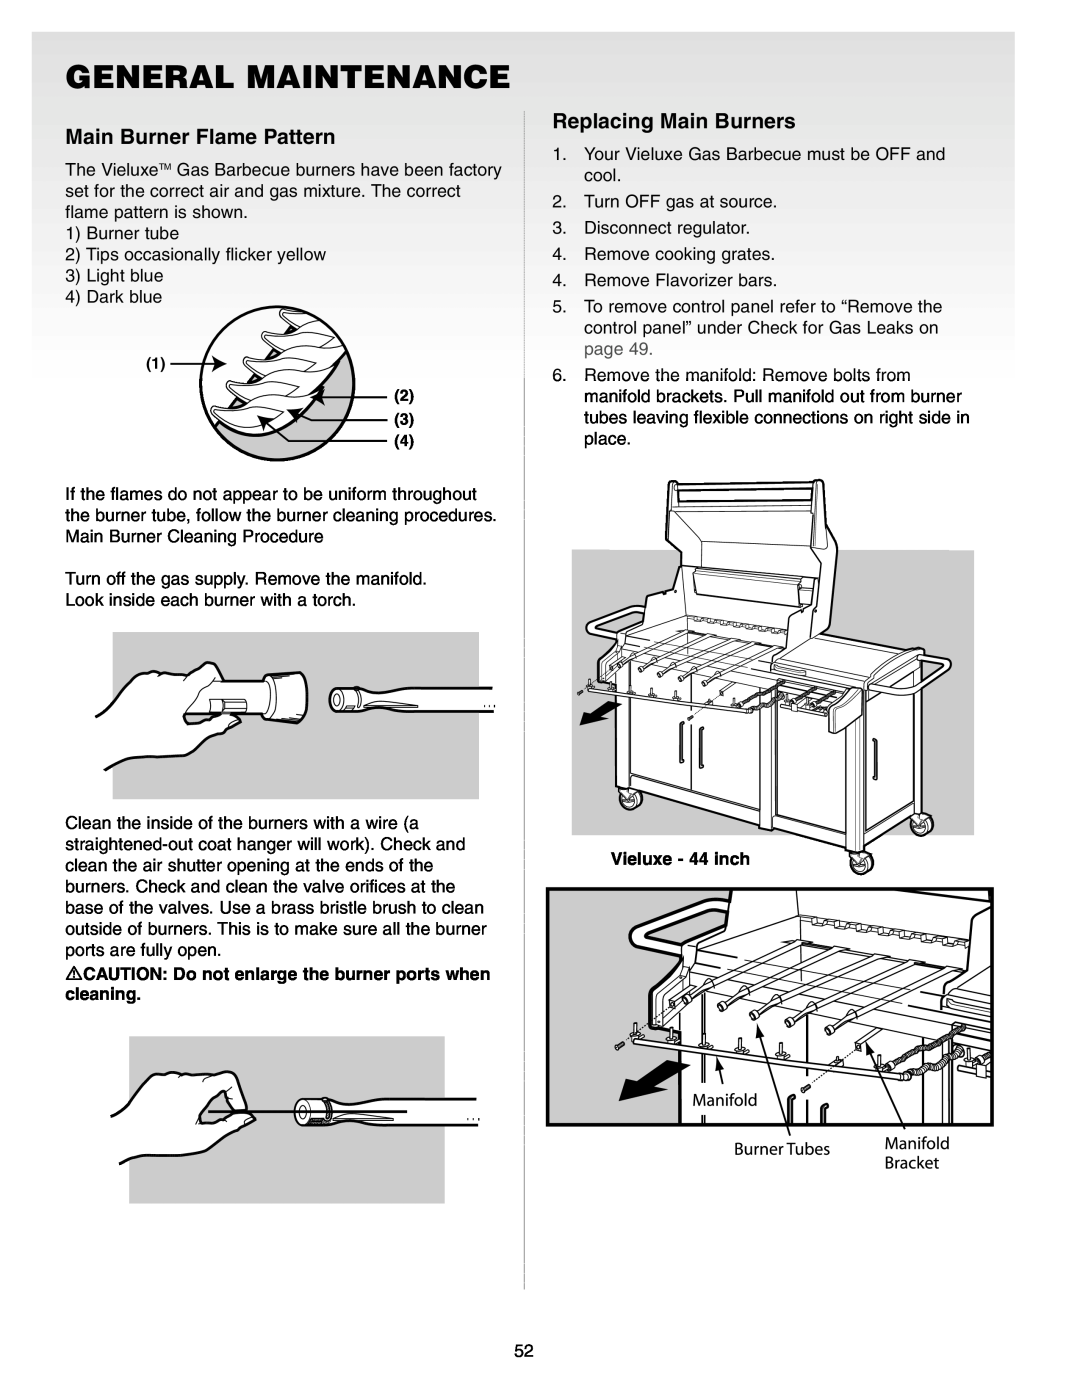 Weber Gas Burner manual General Maintenance, Main Burner Flame Pattern, Replacing Main Burners, Vieluxe - 44 inch 